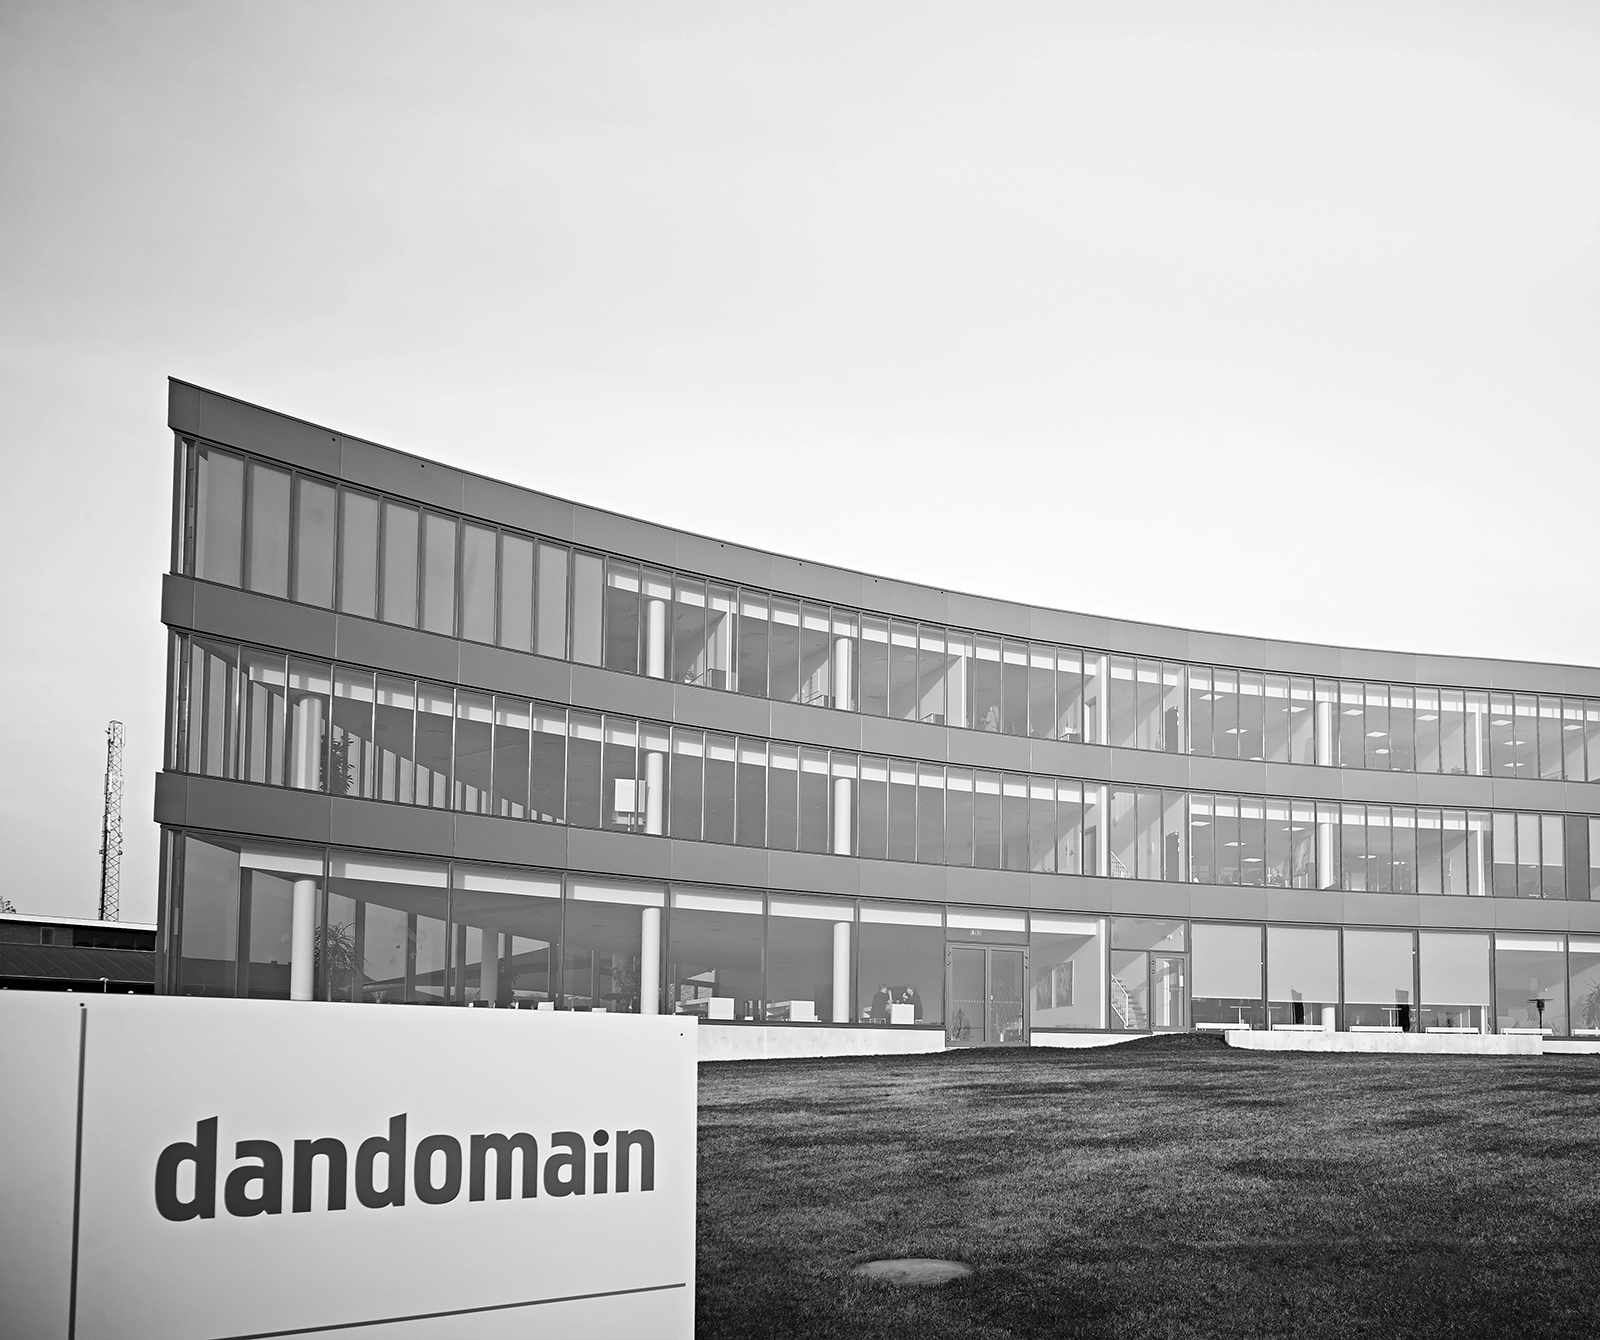 Dandomain's gamle bygning